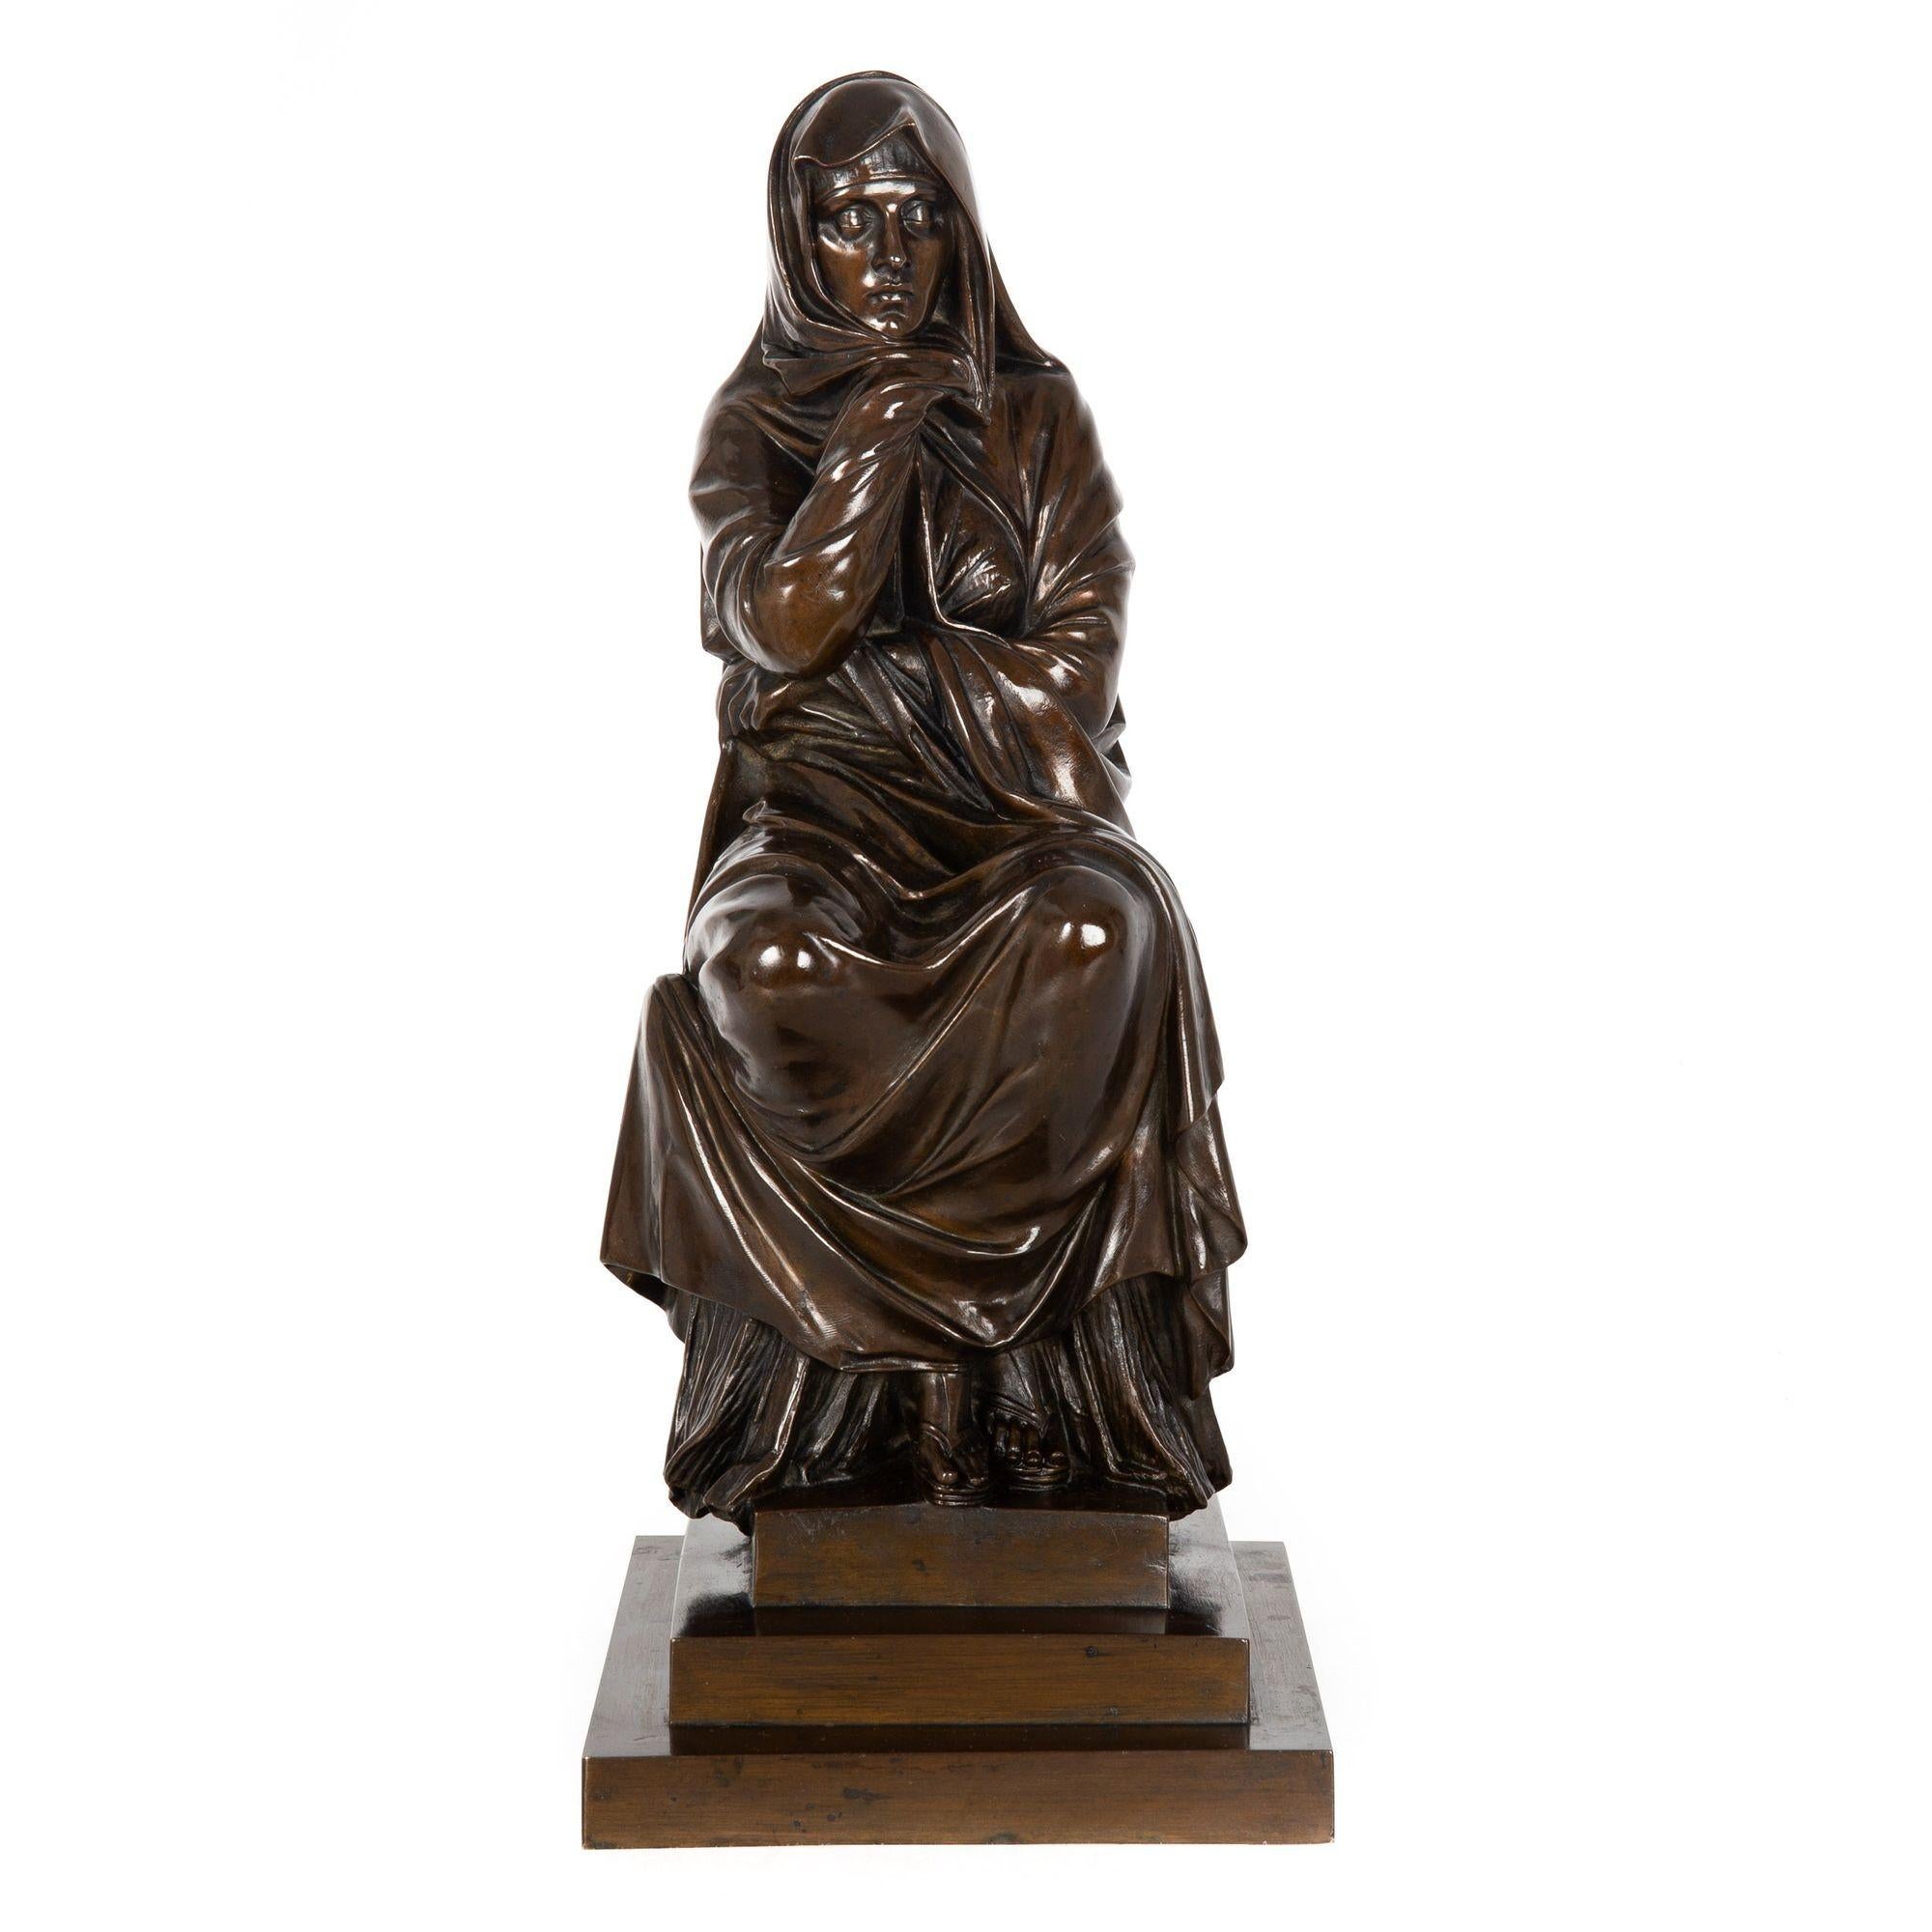 HENRI BRUN
Französisch, 1816-1889

Wahrscheinlich ein Modell der römischen Kaiserin Julia Domna Pia Felix Augustus

Sandgegossene und patinierte Bronze  signiert 